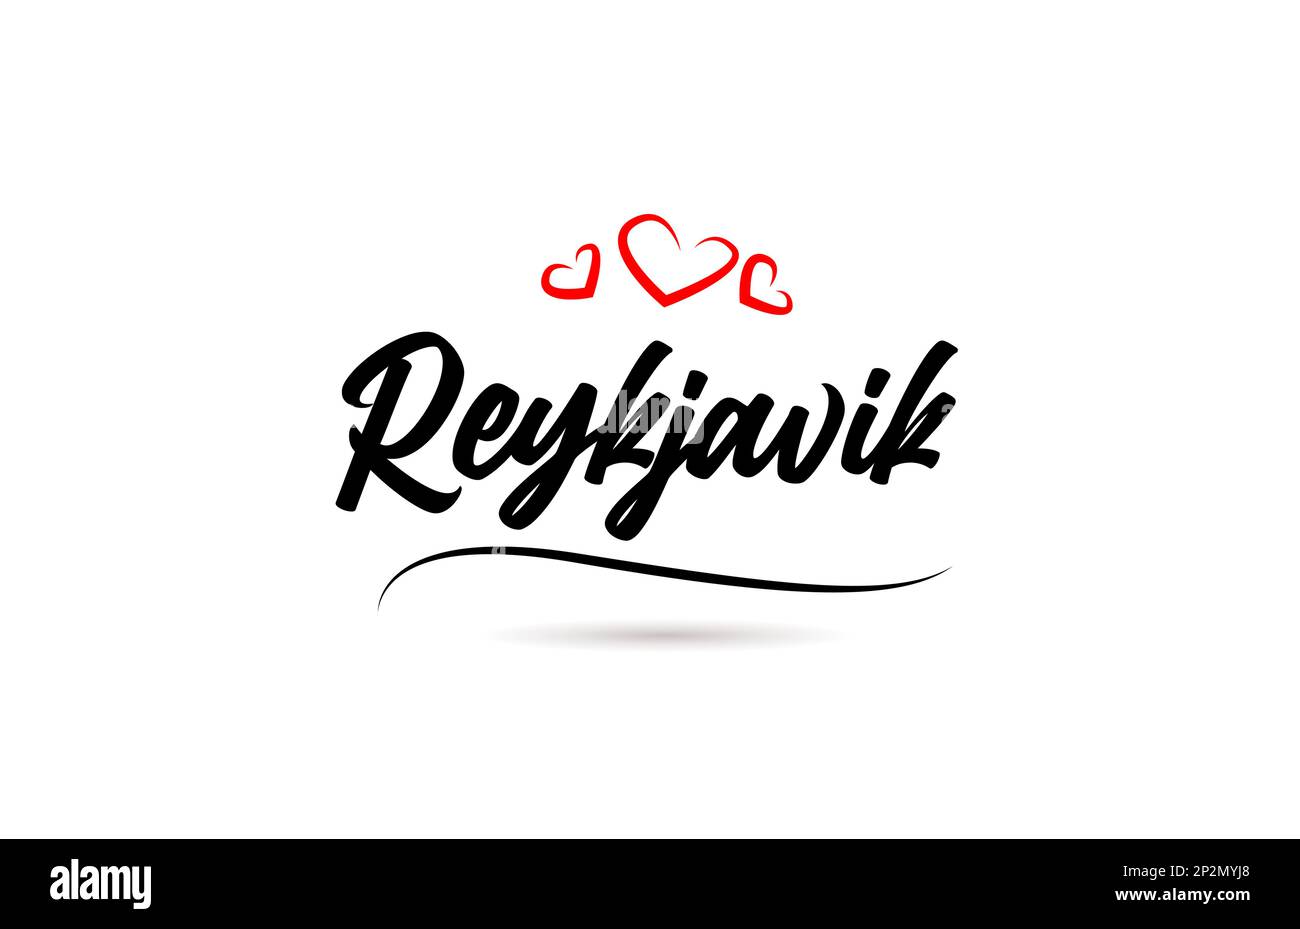 Reykjavik european City typographie texte mot avec style d'amour. Lettrage à la main. Texte calligraphique moderne Illustration de Vecteur